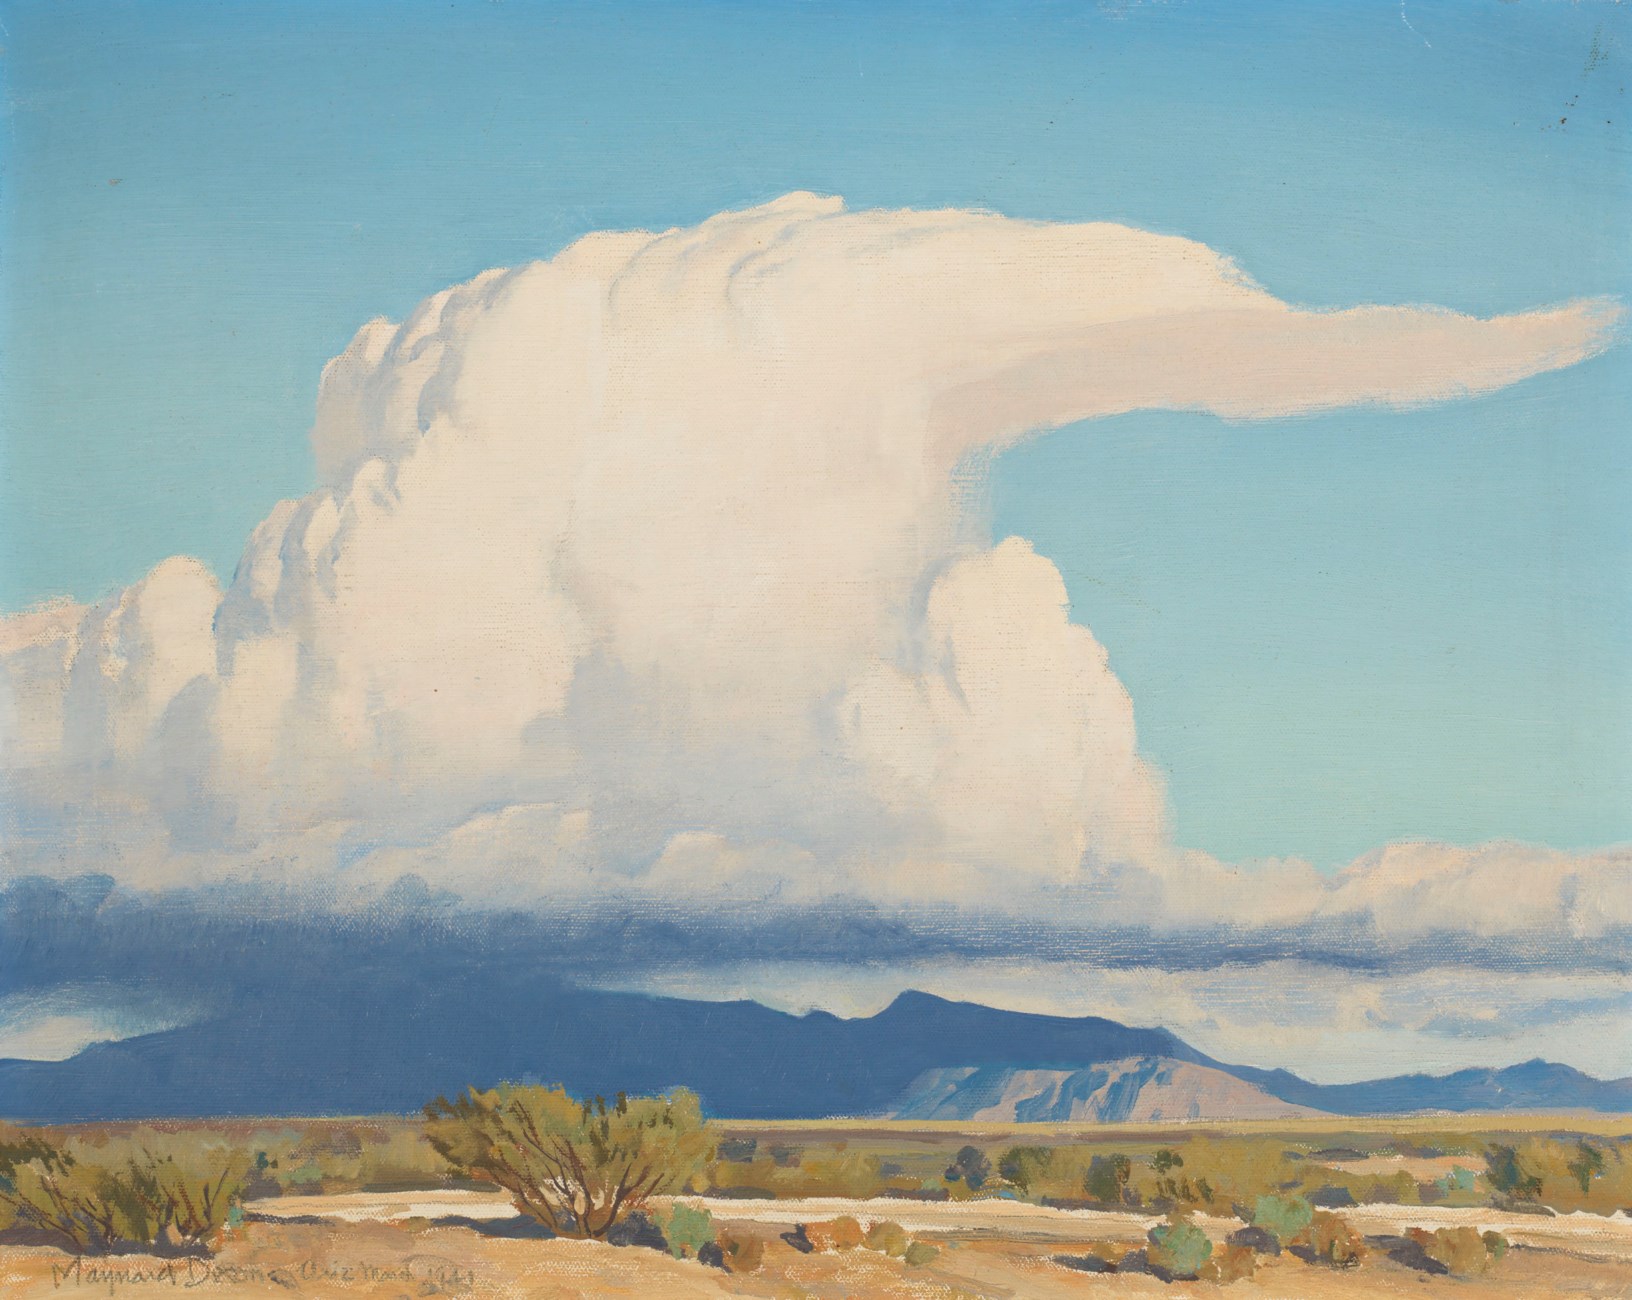 Wolk by Maynard Dixon - 1941 - 40,6 x 50,8 cm 